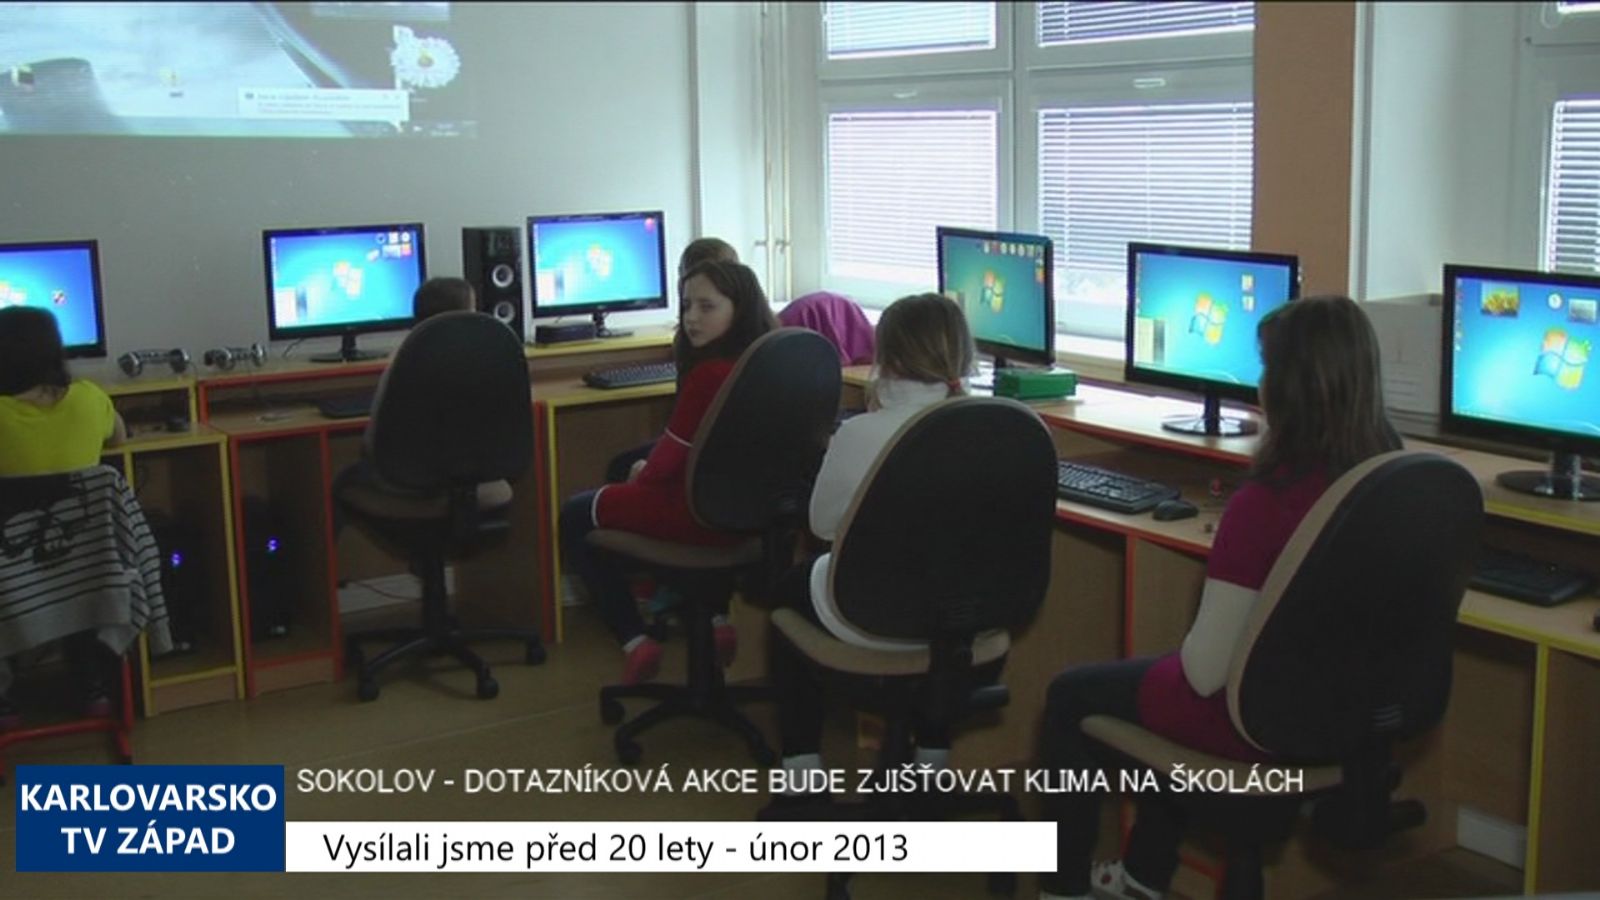 2013 – Sokolov: Dotazníková akce bude zjišťovat klima na školách 4891 (TV Západ)